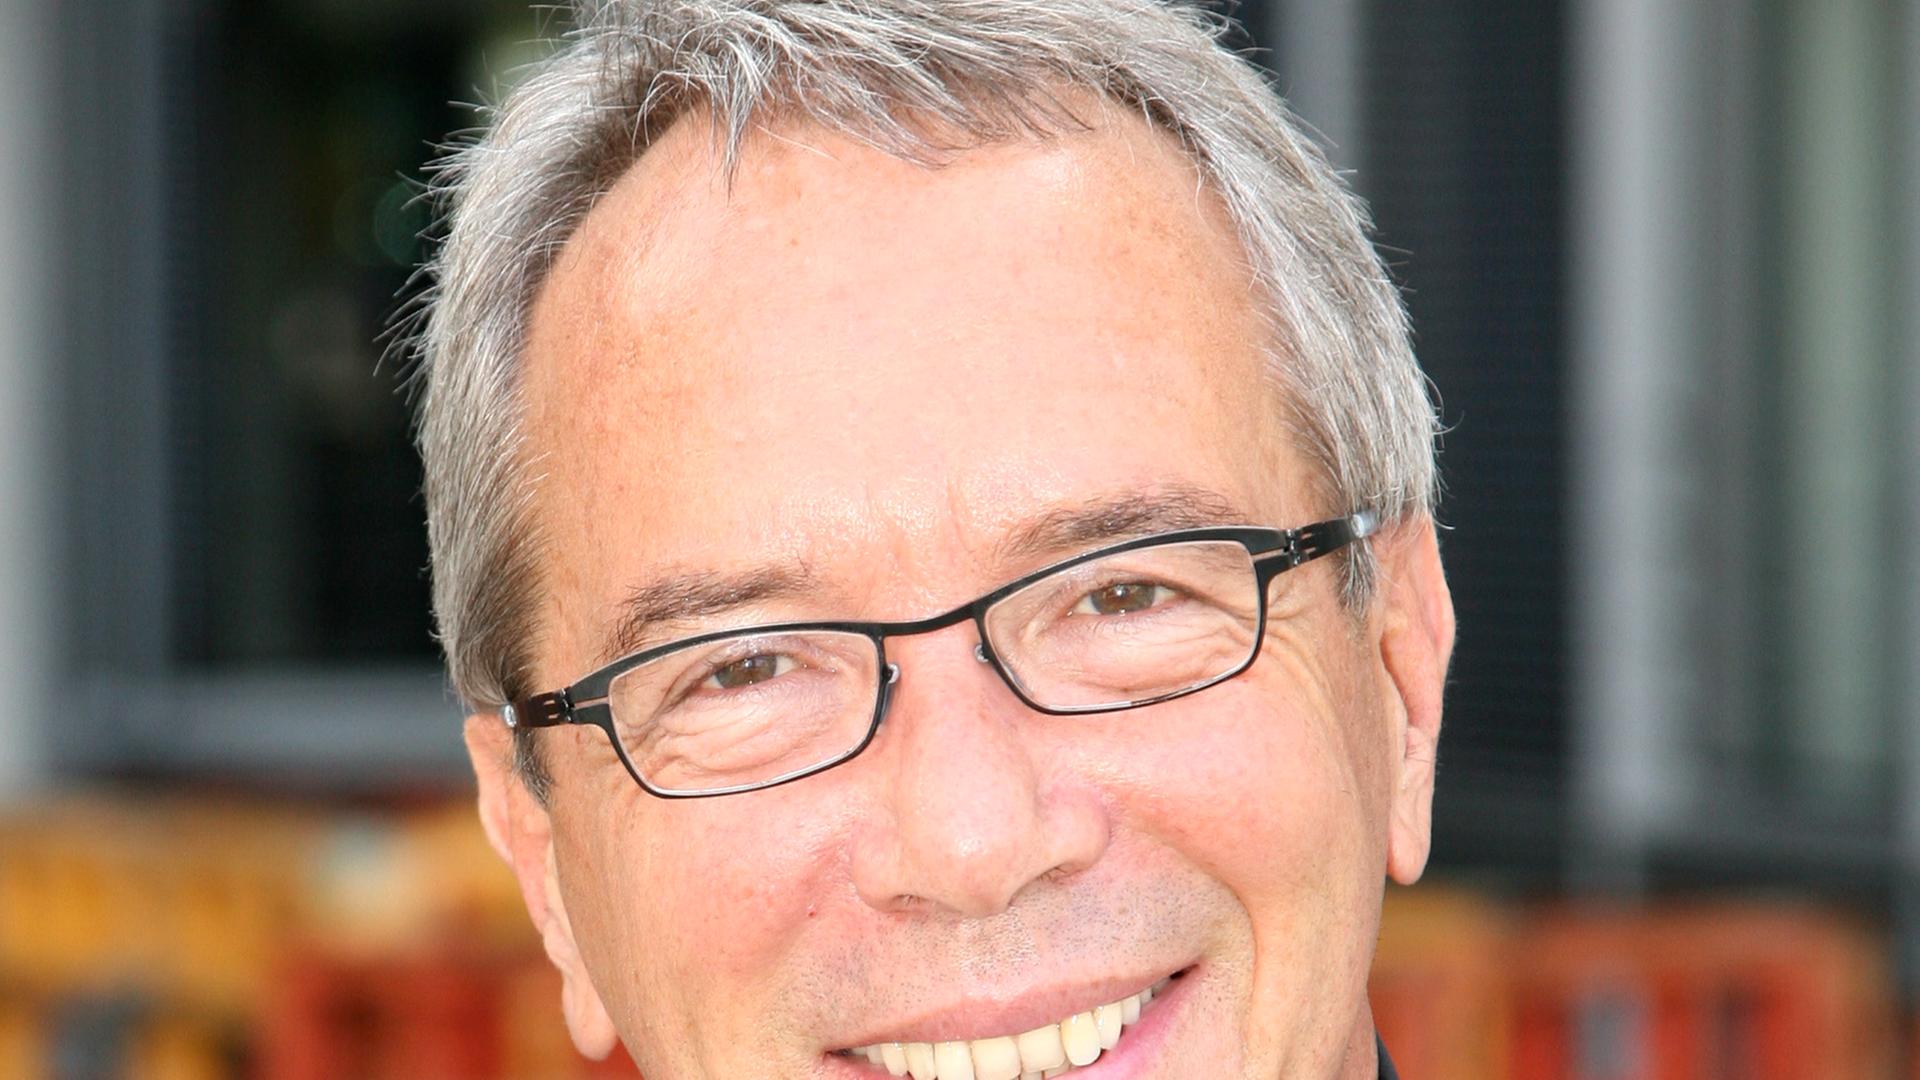 Wolfgang Neskovic, ehem. Bundesrichter und Rechtspolitiker der Linkspartei